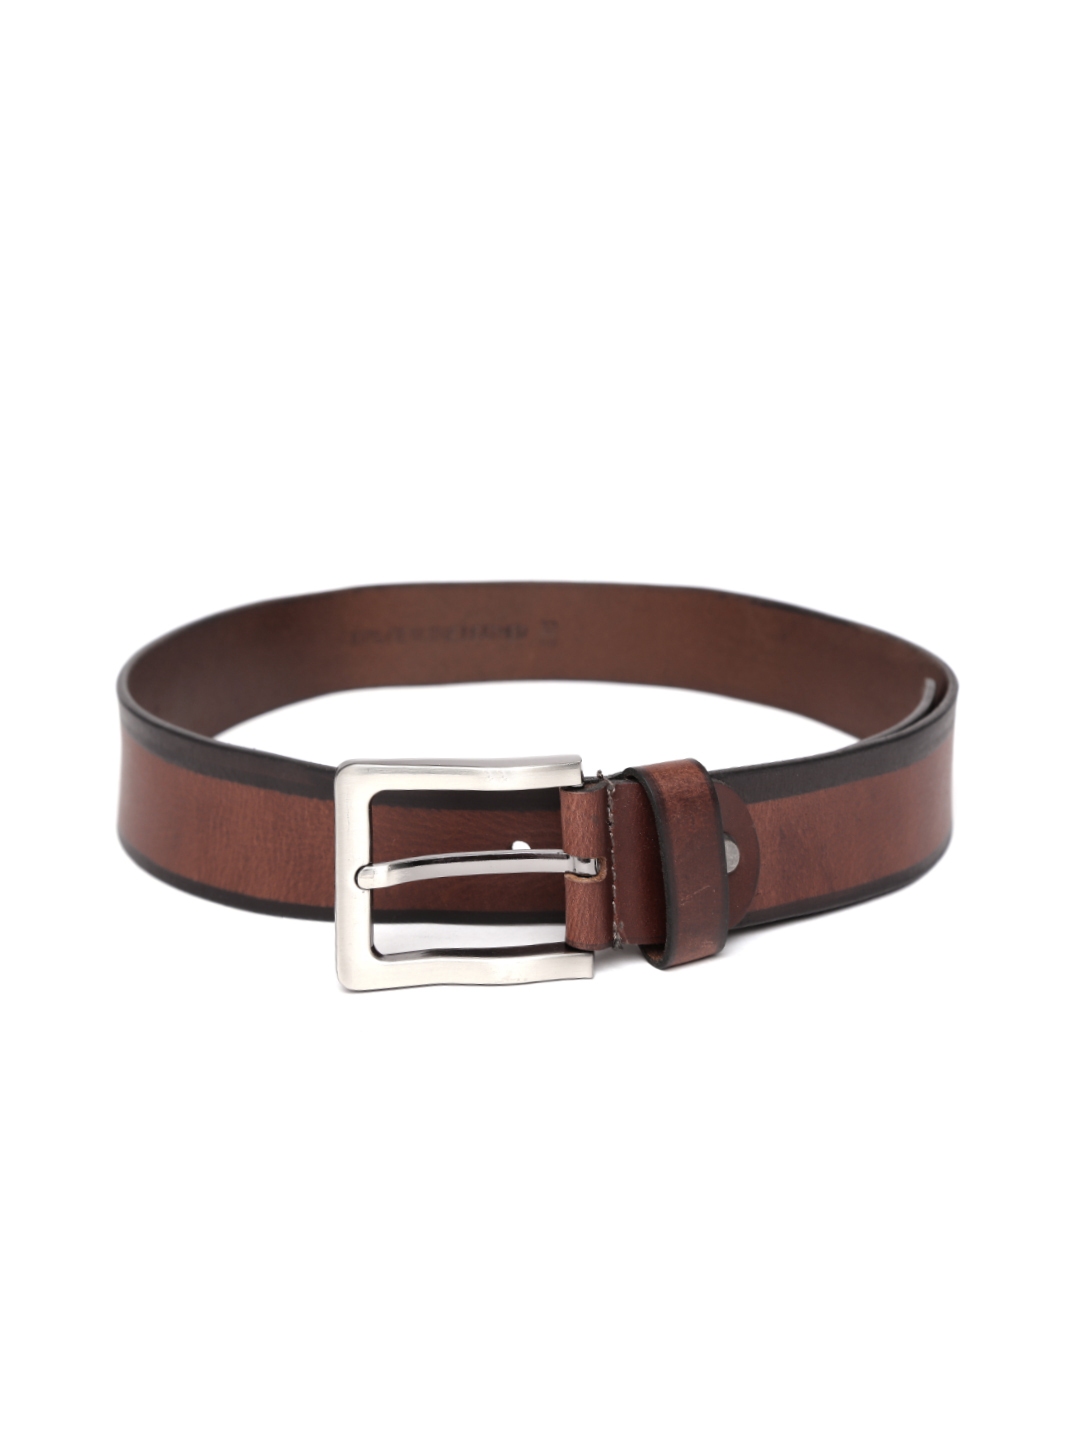 Buy Roadster Men Brown Genuine Leather Belt - Belts for Men 1295365 ...